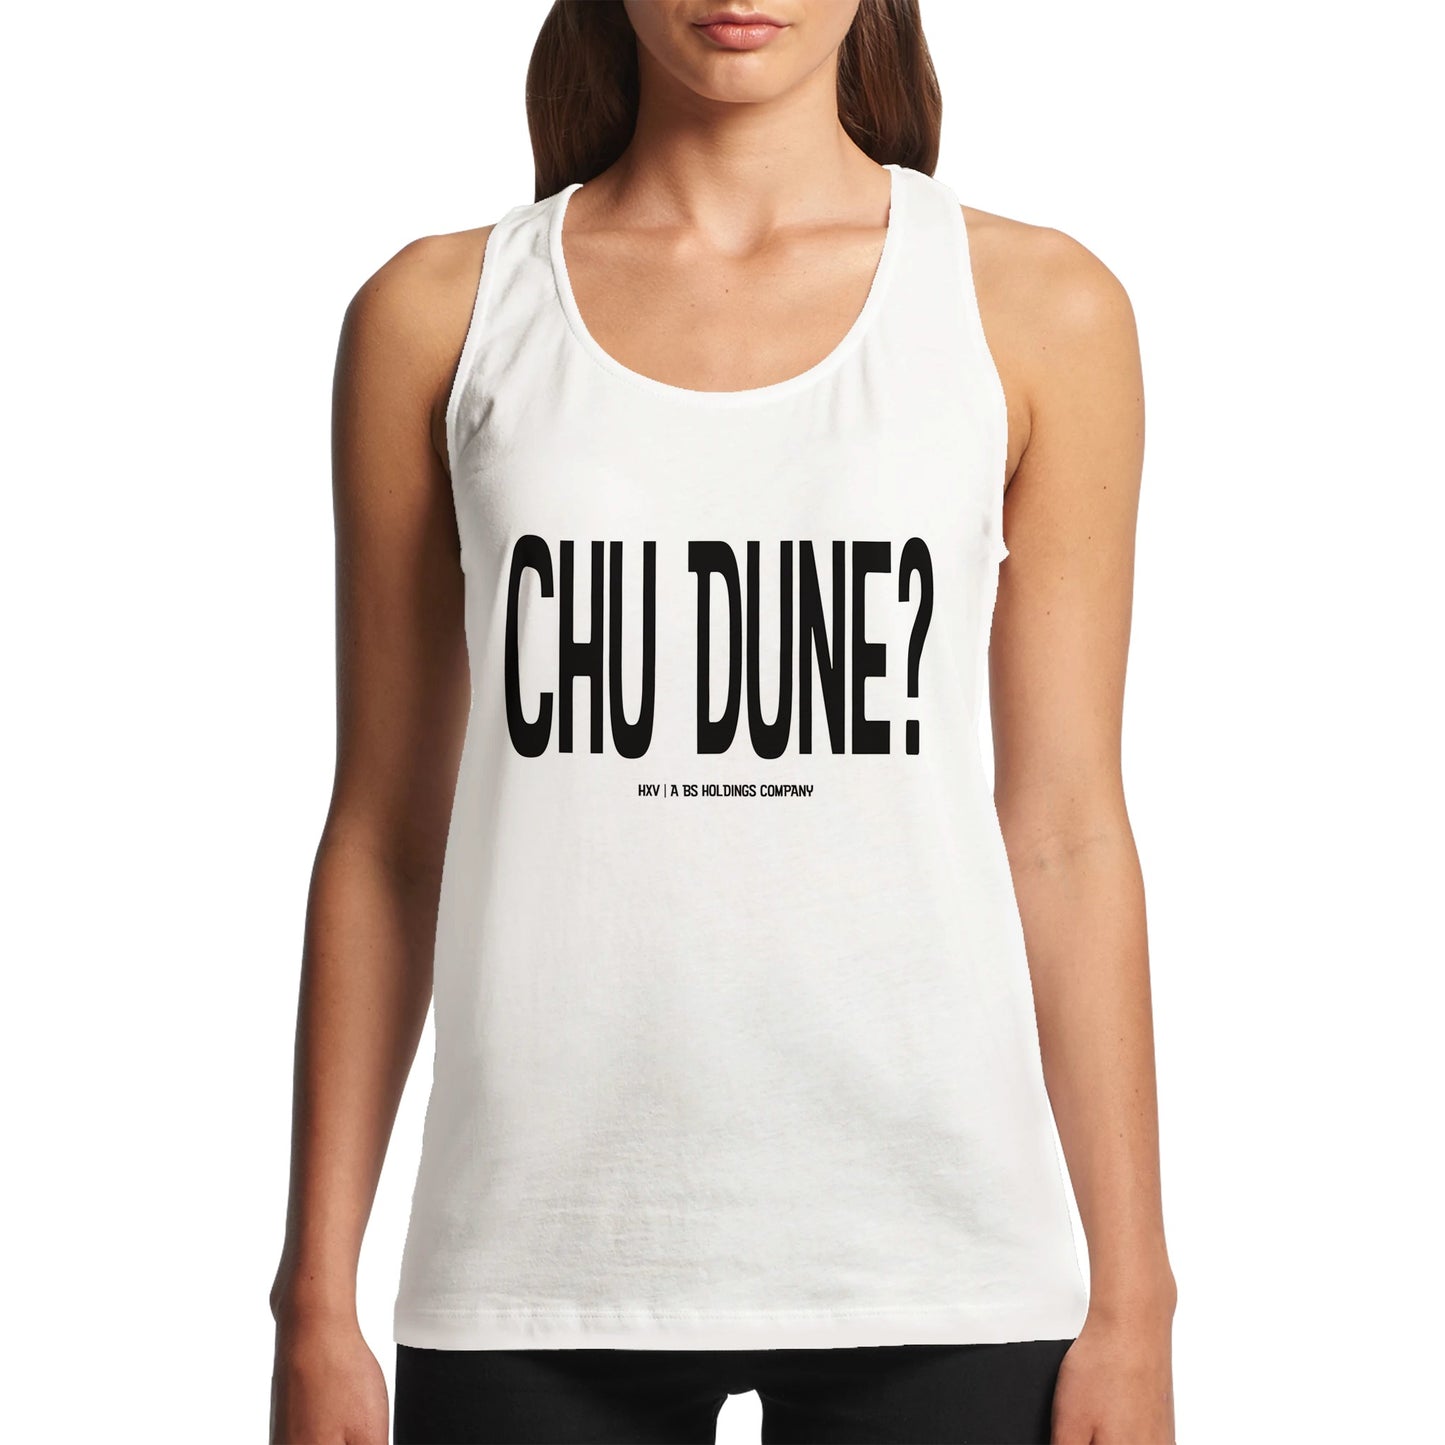 Chu Dune? in Women